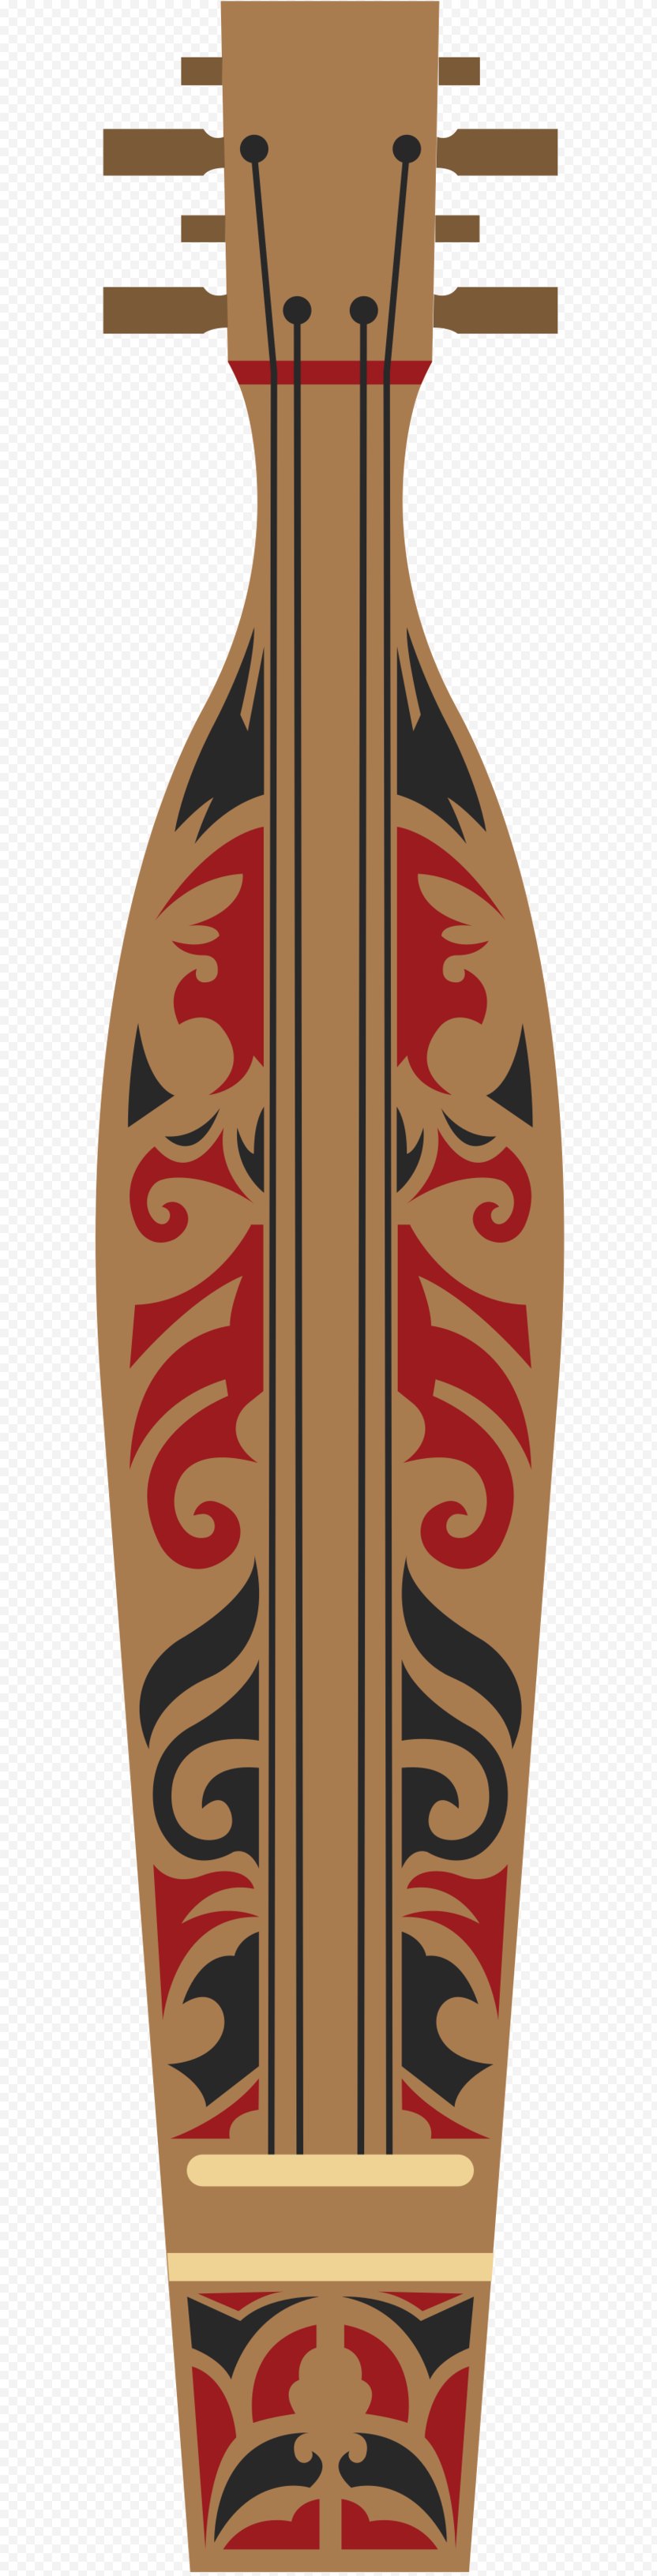 Skateboard Product Design Font - Deck PNG